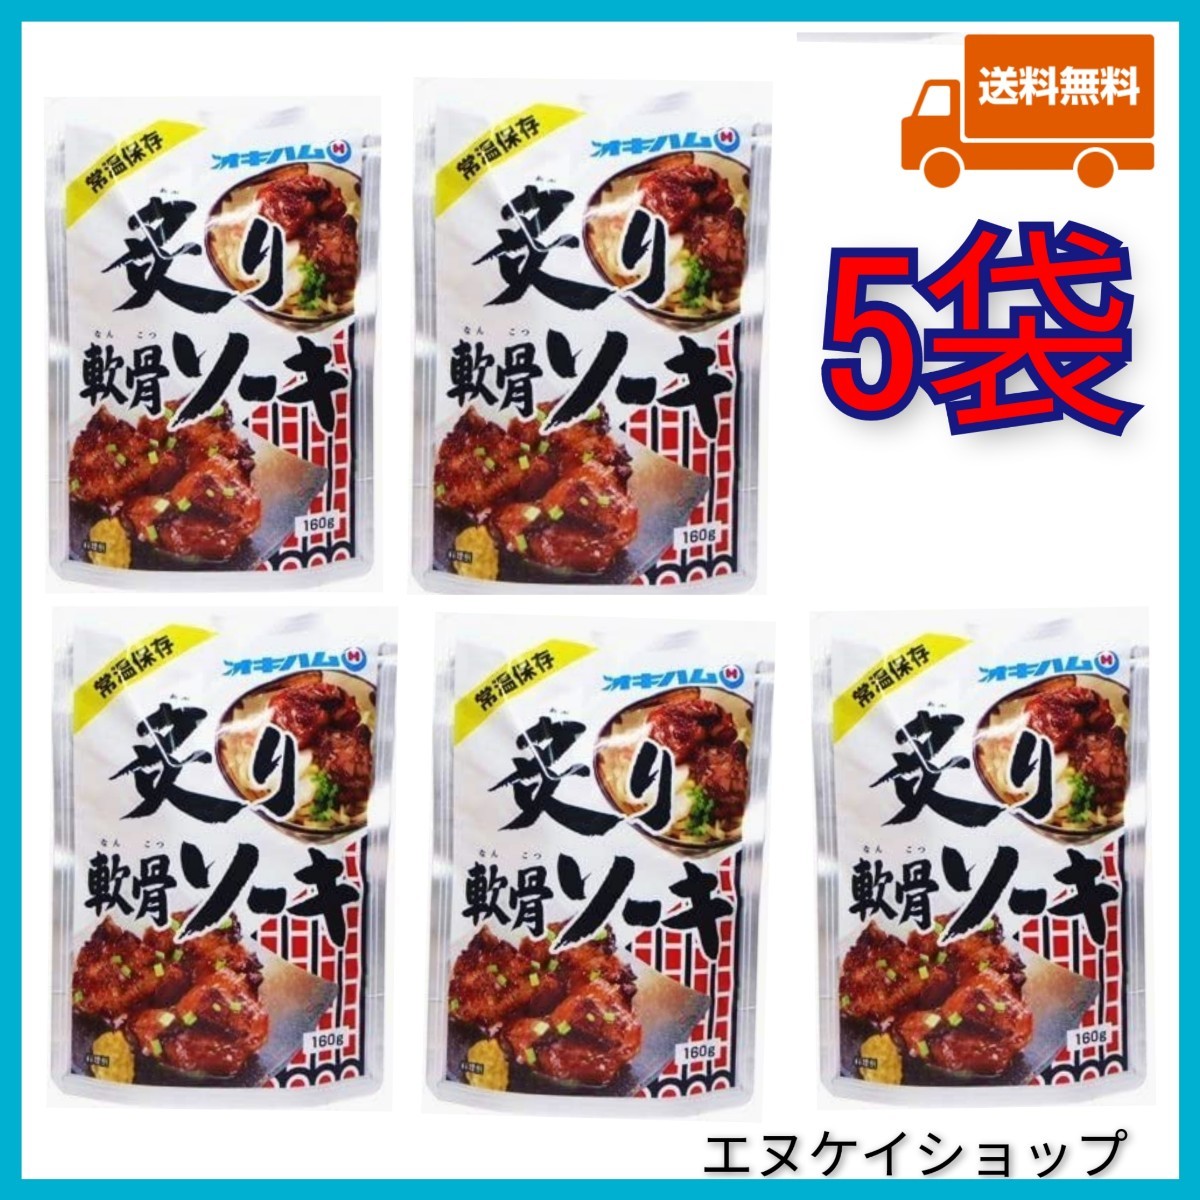 [5 пакет ]....so-kioki ветчина retort so-ki Okinawa соба топпинг Okinawa . земля производство новейший. срок годности 2025.01.10 после 